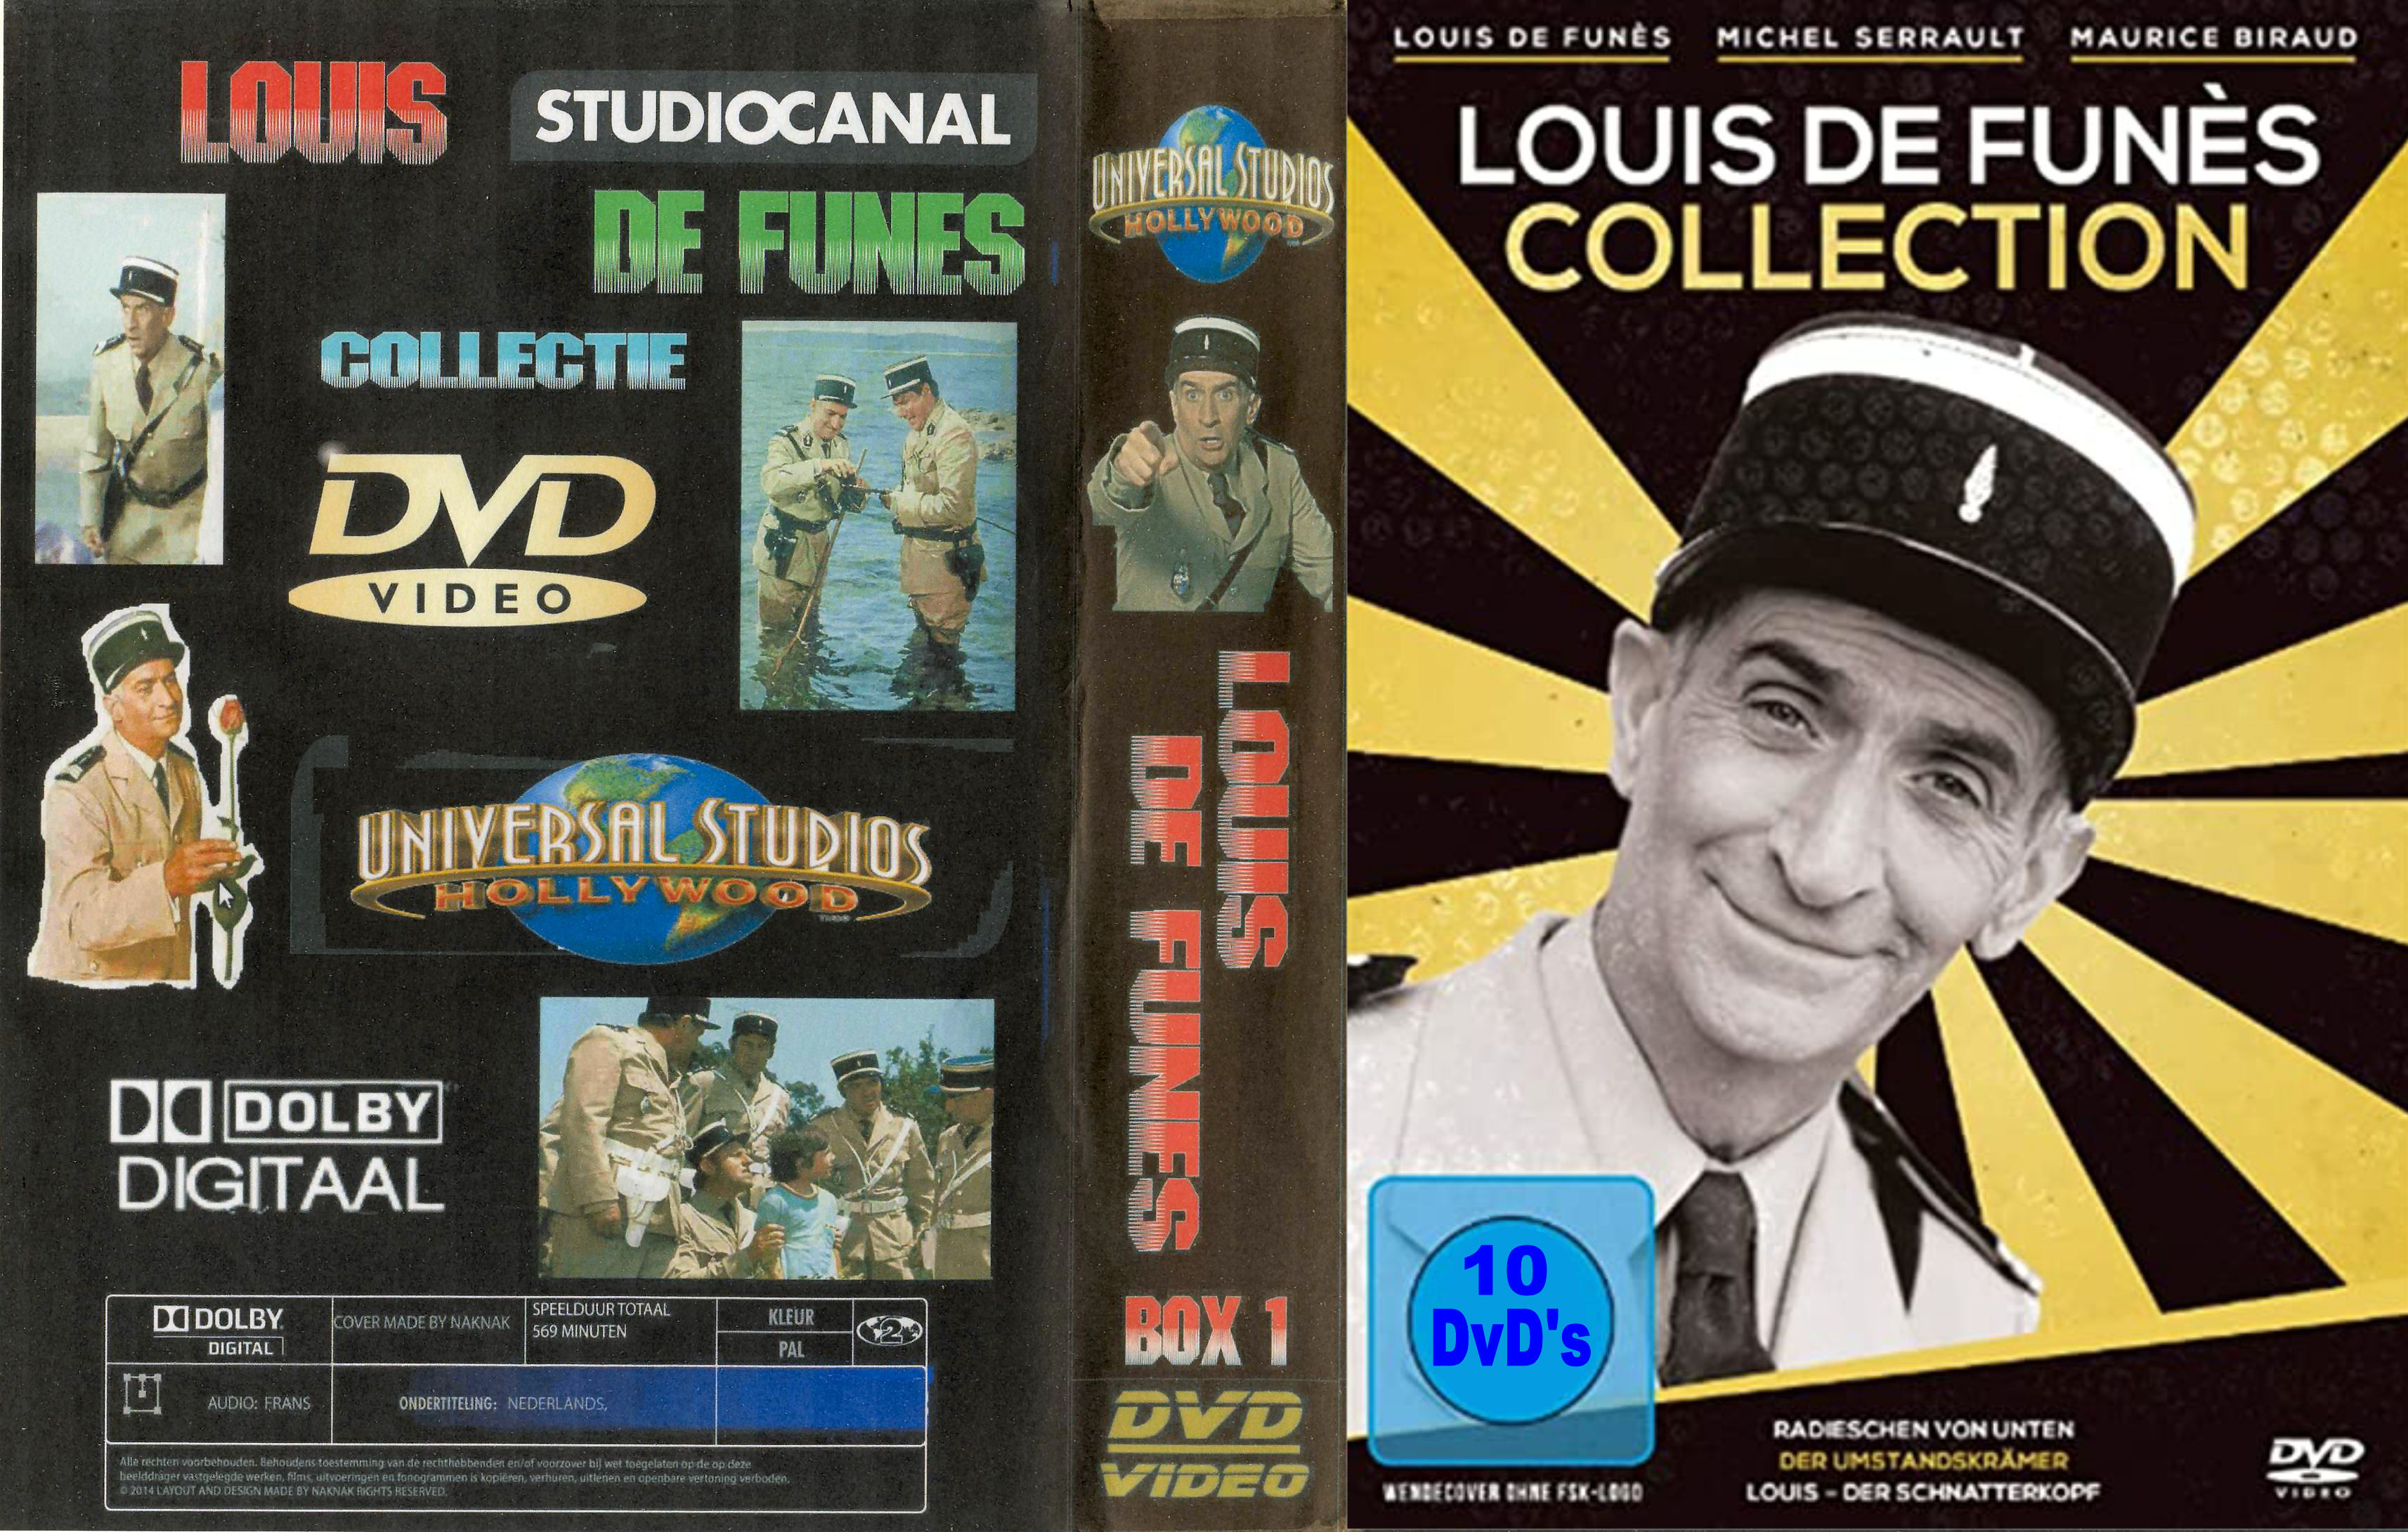 Louis de Funes Collectie ( 30 DvD's ) - DvD 1